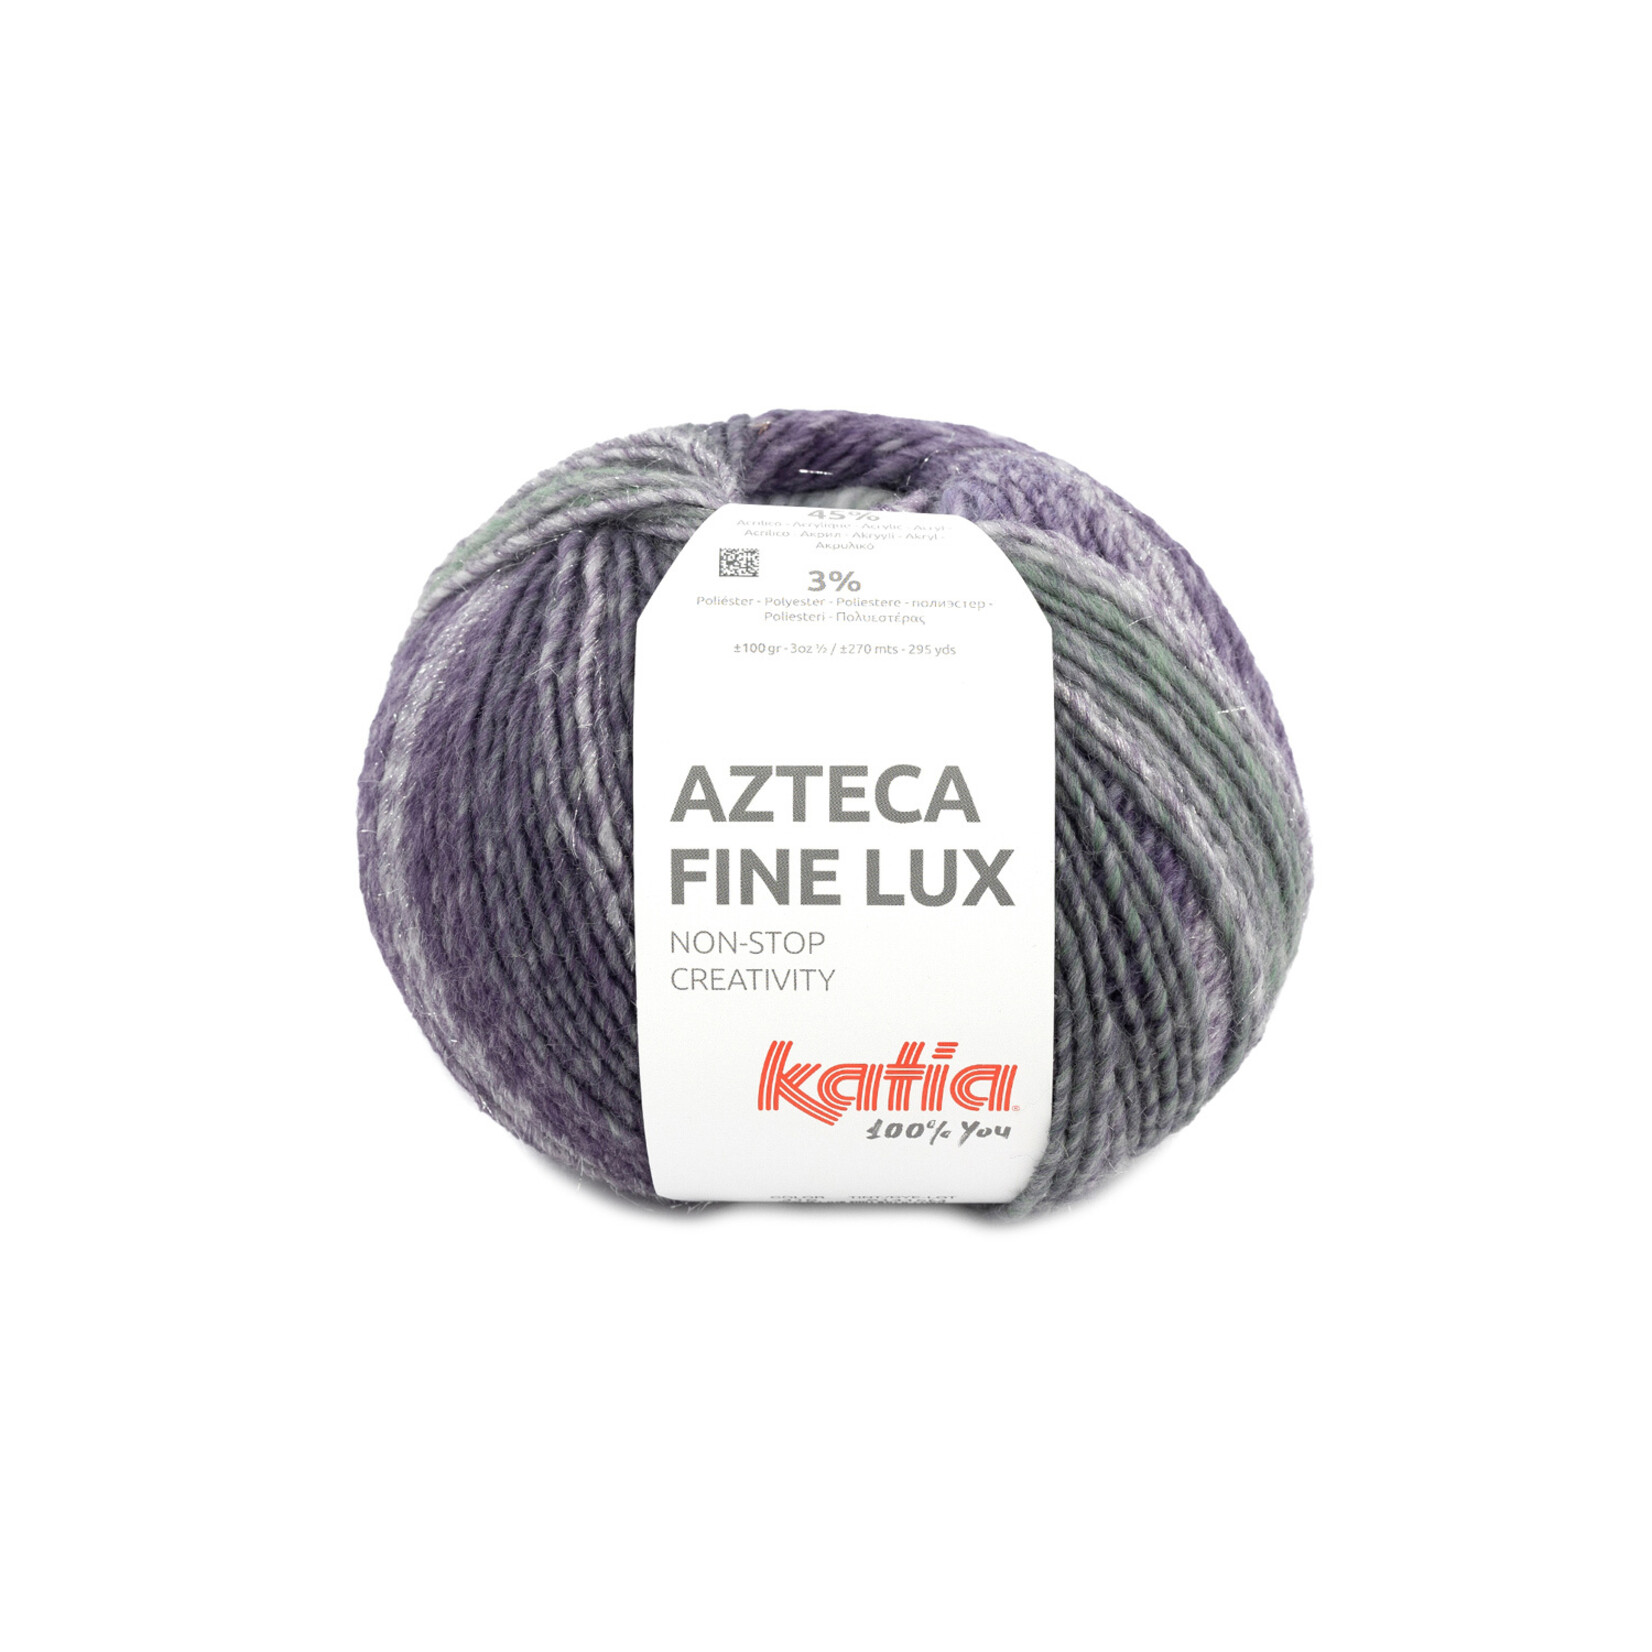 Katia Azteca Fine Lux 416 Paars-Groen